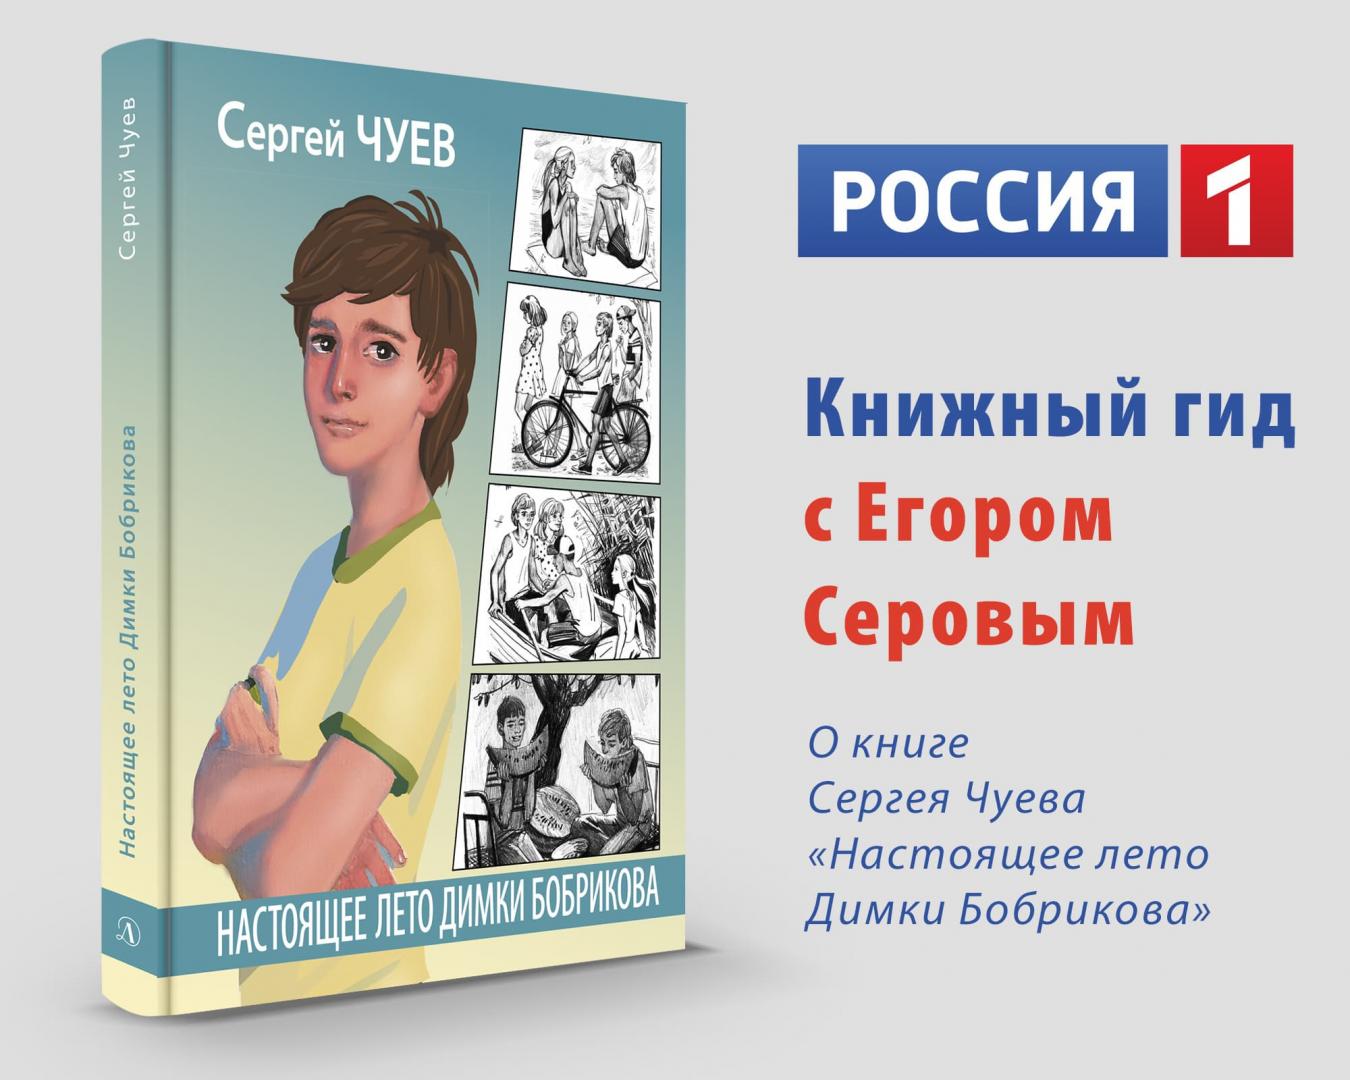 Статья: "Где купить книгу "Настоящее лето Димки Бобрикова"?" - Издательство «Детская литература»